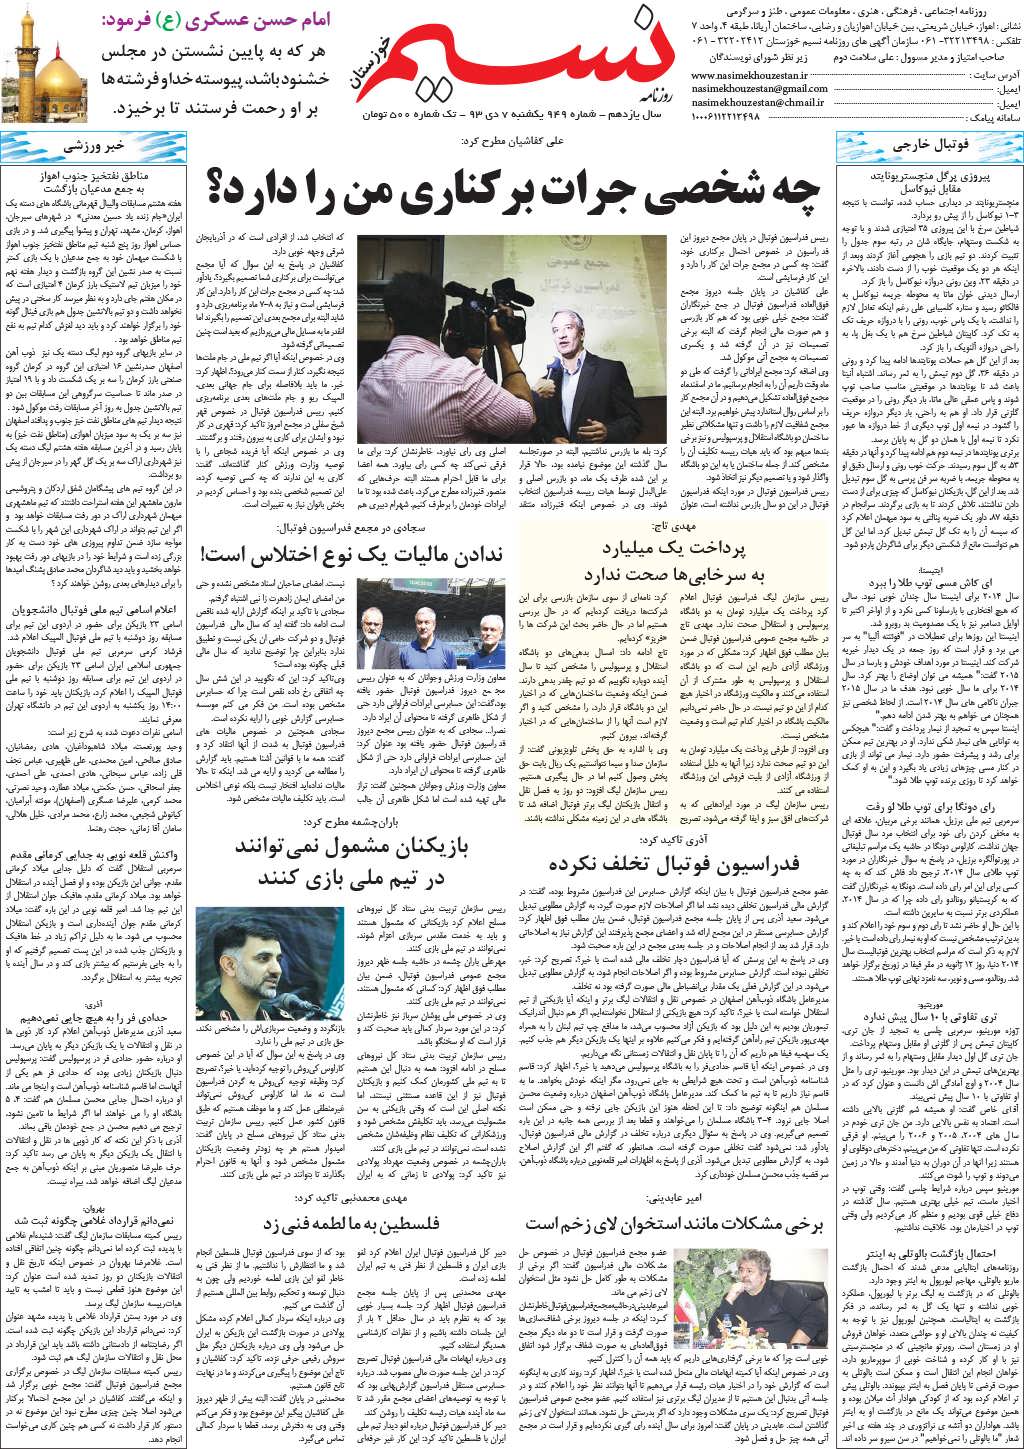 صفحه آخر روزنامه نسیم شماره 949